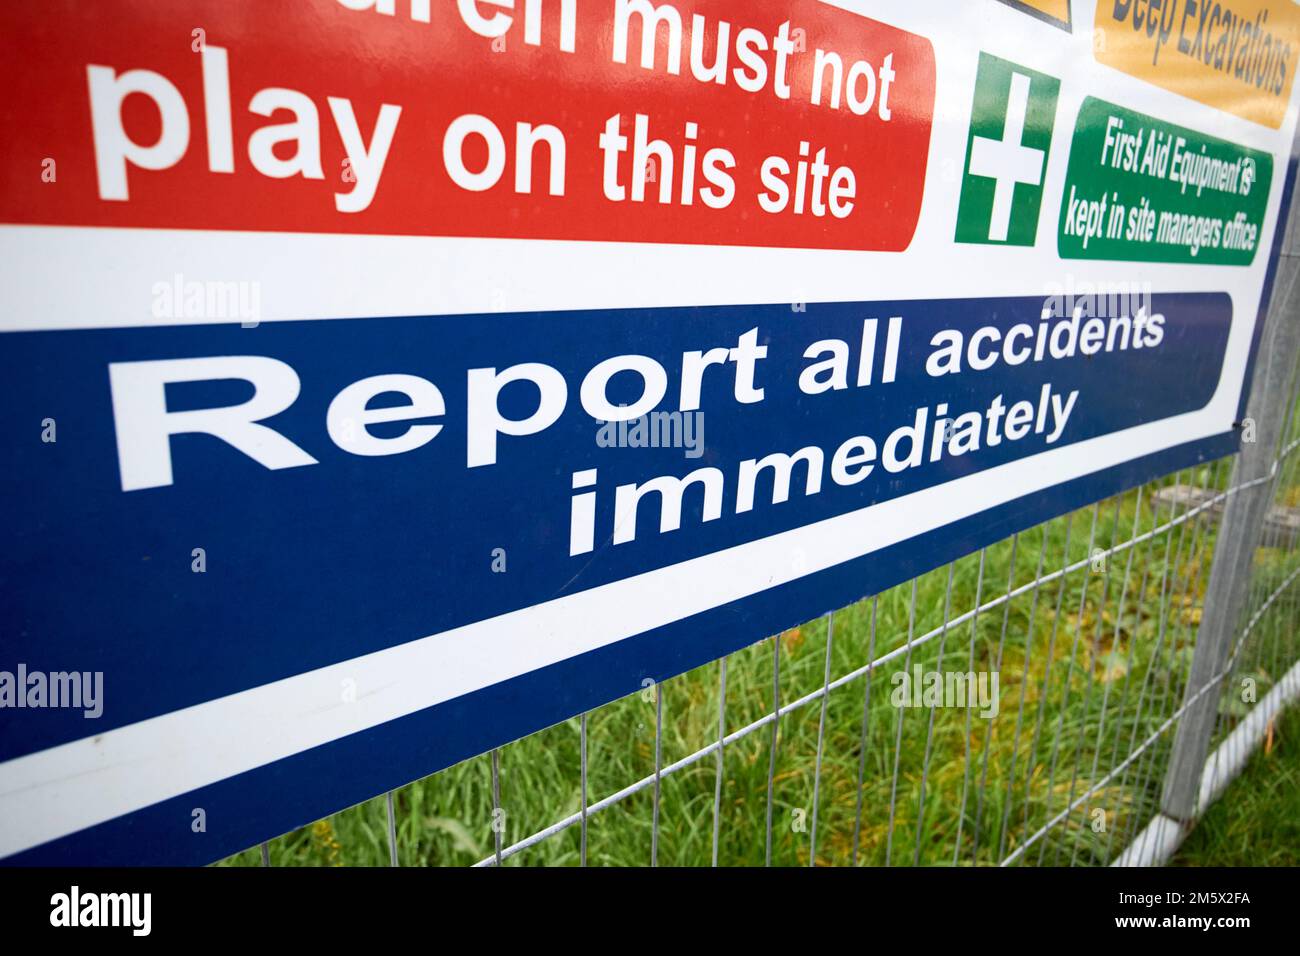 Melden Sie alle Unfälle unverzüglich auf der Baustelle Warnschilder und Hinweise newtownabbey, nordirland, großbritannien Stockfoto